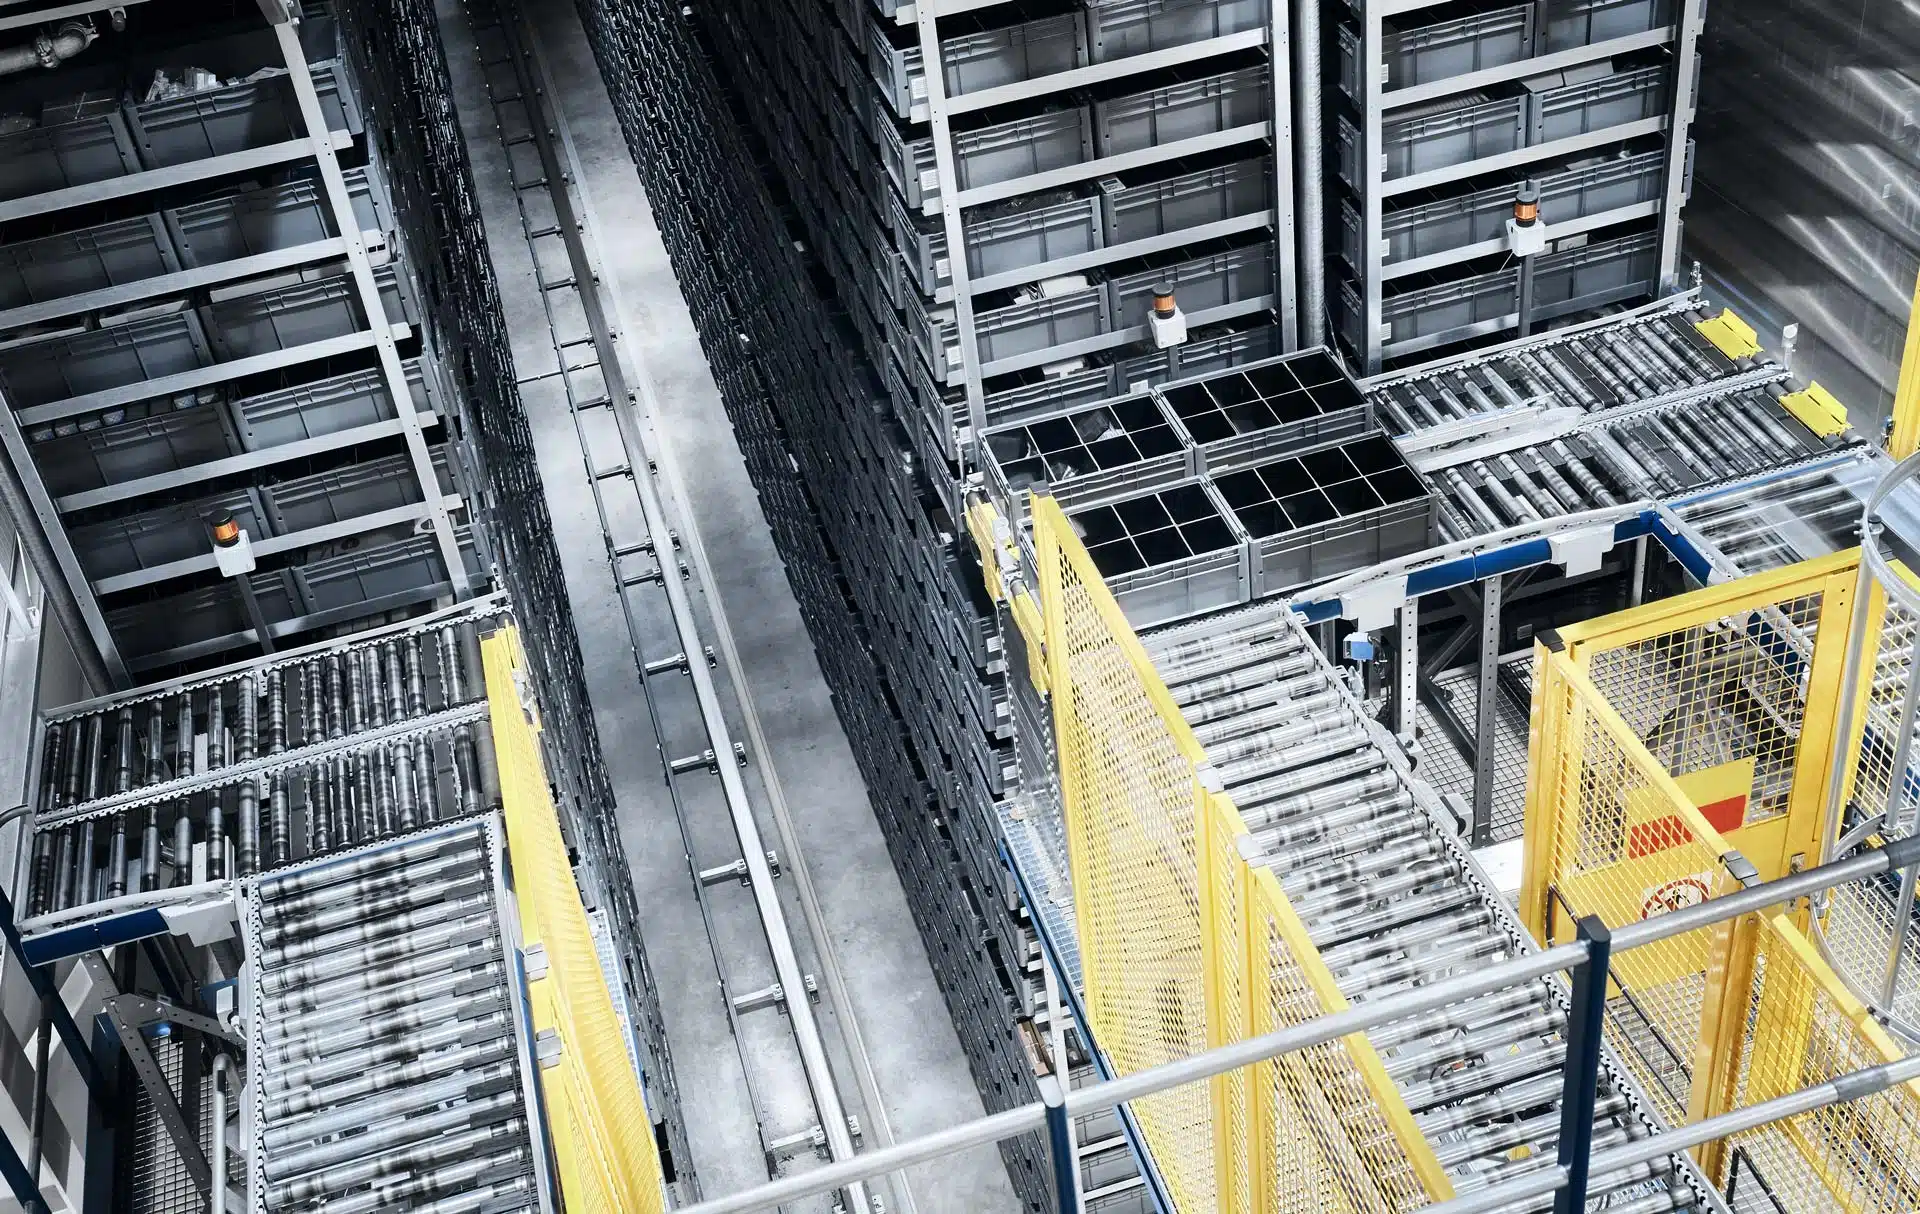 warehouse-management-system-zur-steuerung-automatisierter-warenlager